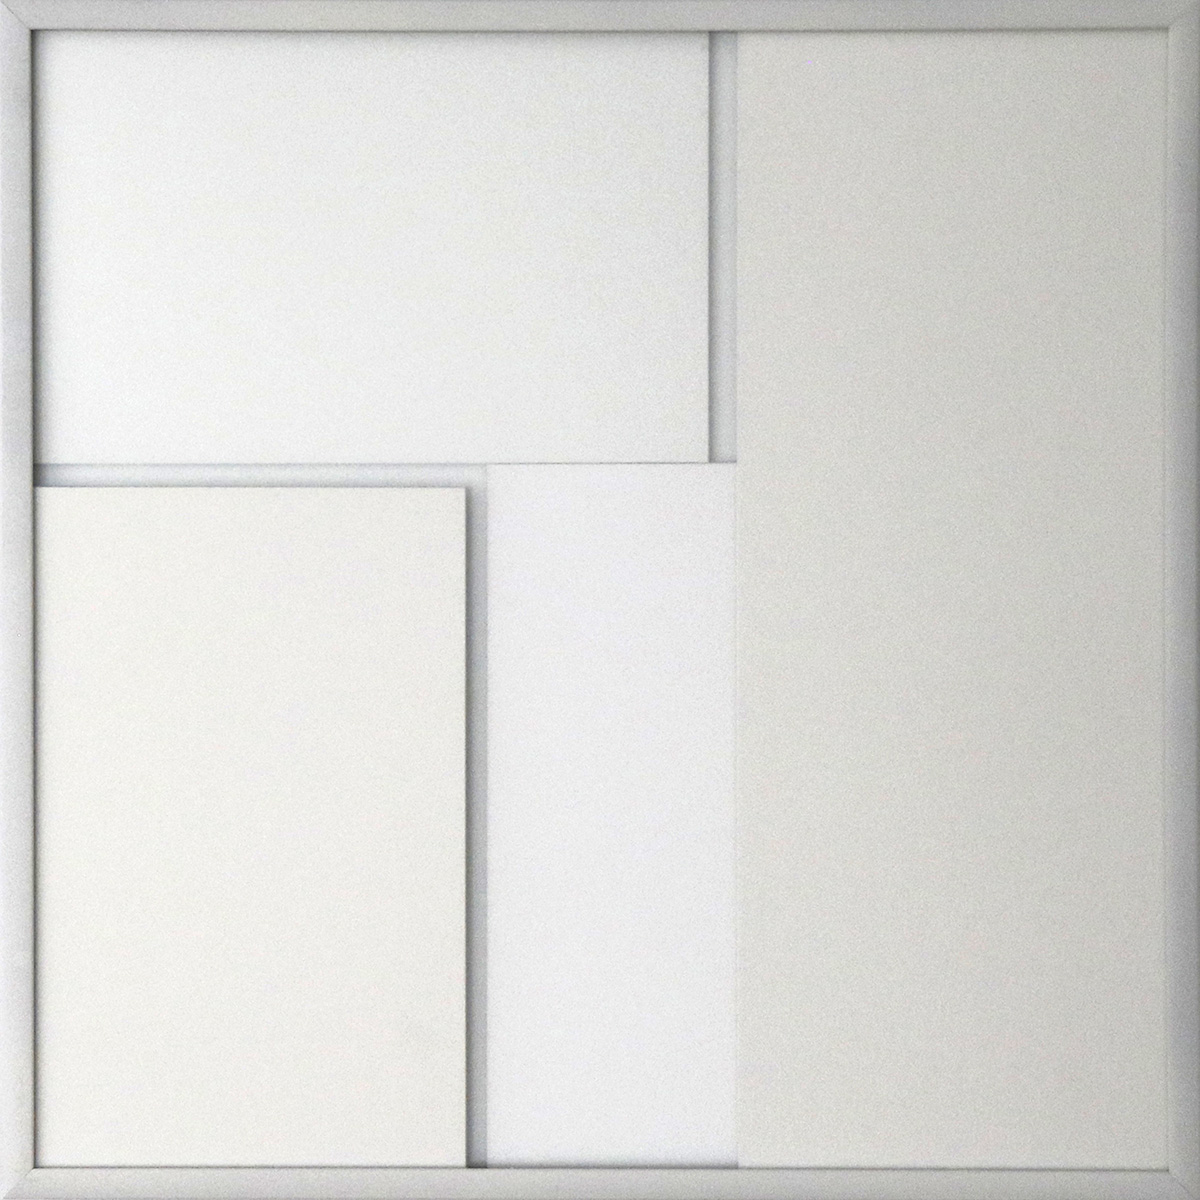 verdichtete Transparenz 18, 202230 x 30 x 4 cmcardboard and glass, framedEdition: 3